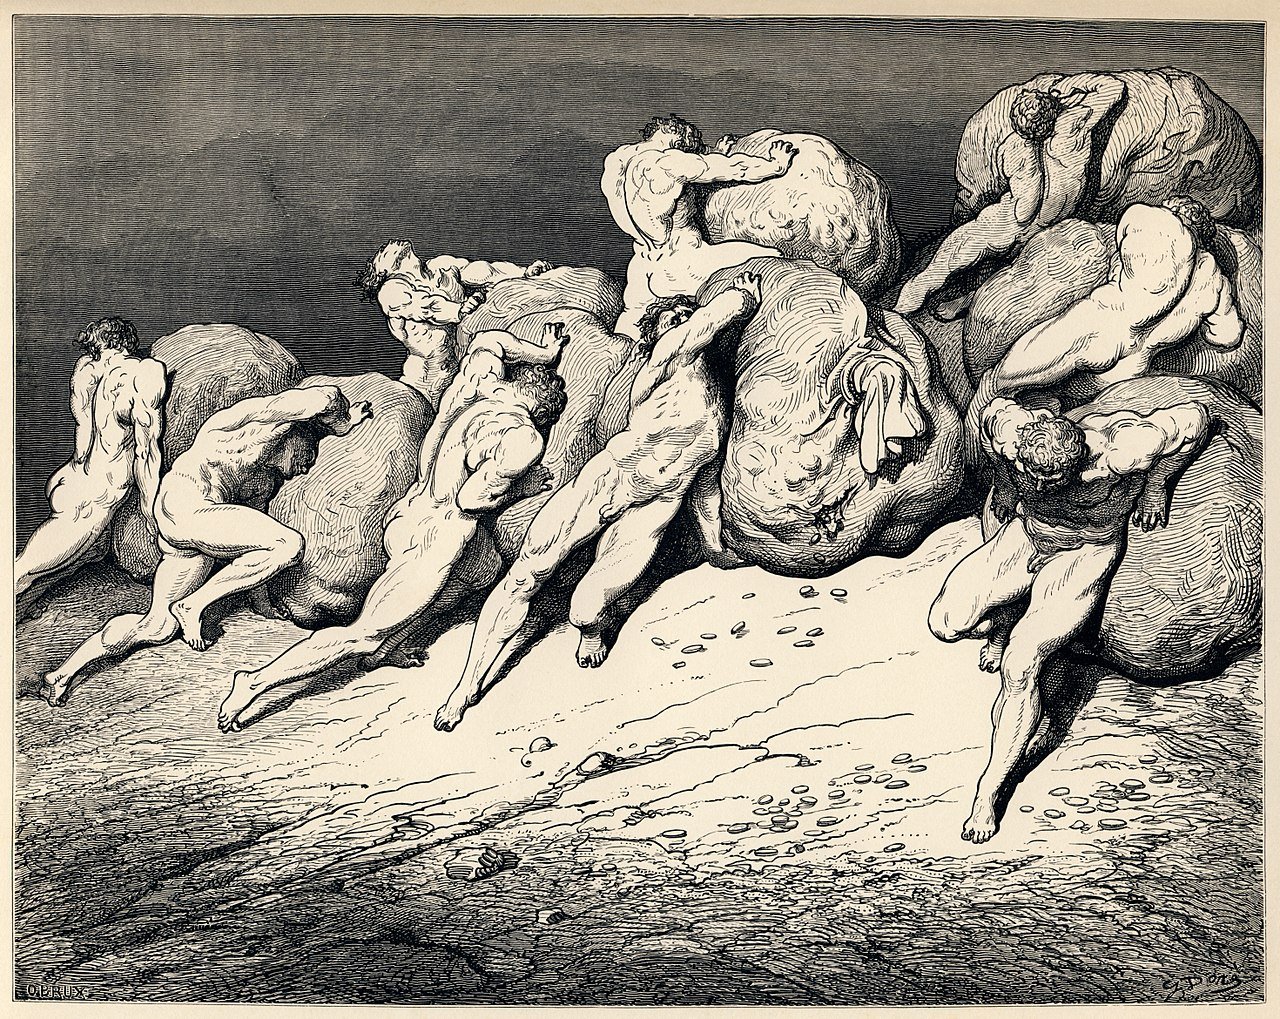 Гюстав Доре, иллюстрация к «Божественной комедии», 1856 год. Источник: Wikimedia